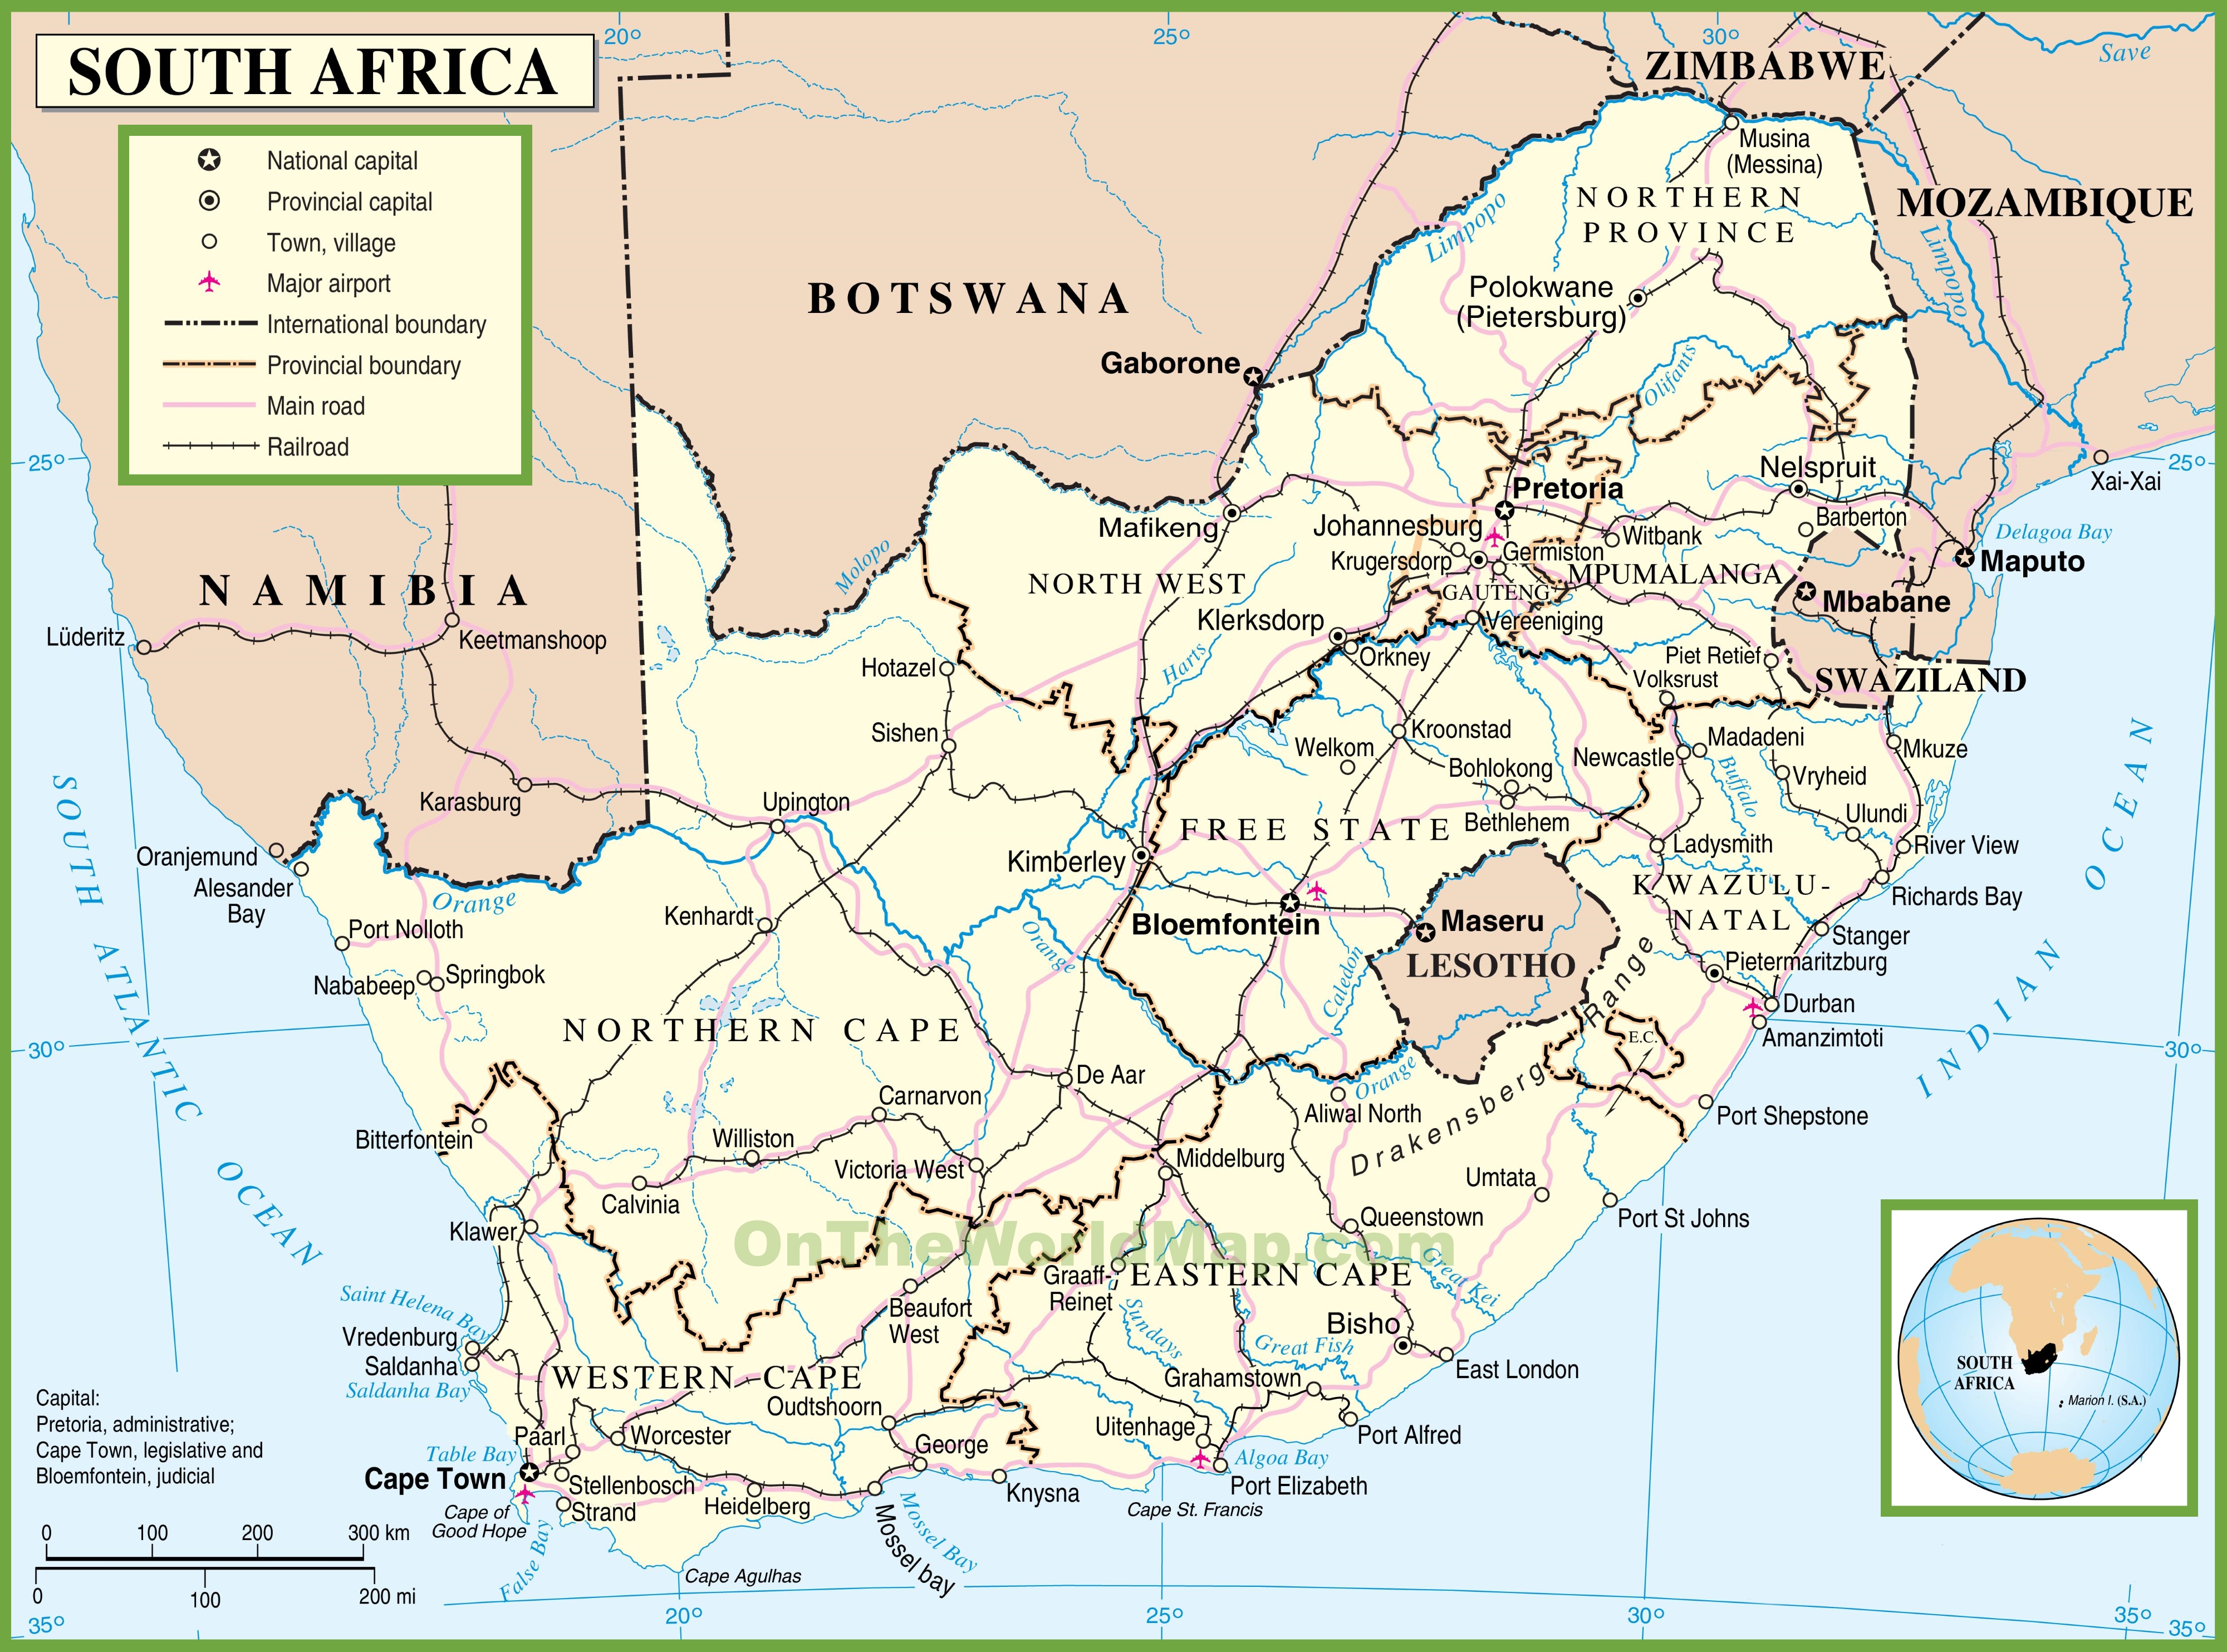 https://ontheworldmap.com/south-africa/south-africa-political-map.jpg